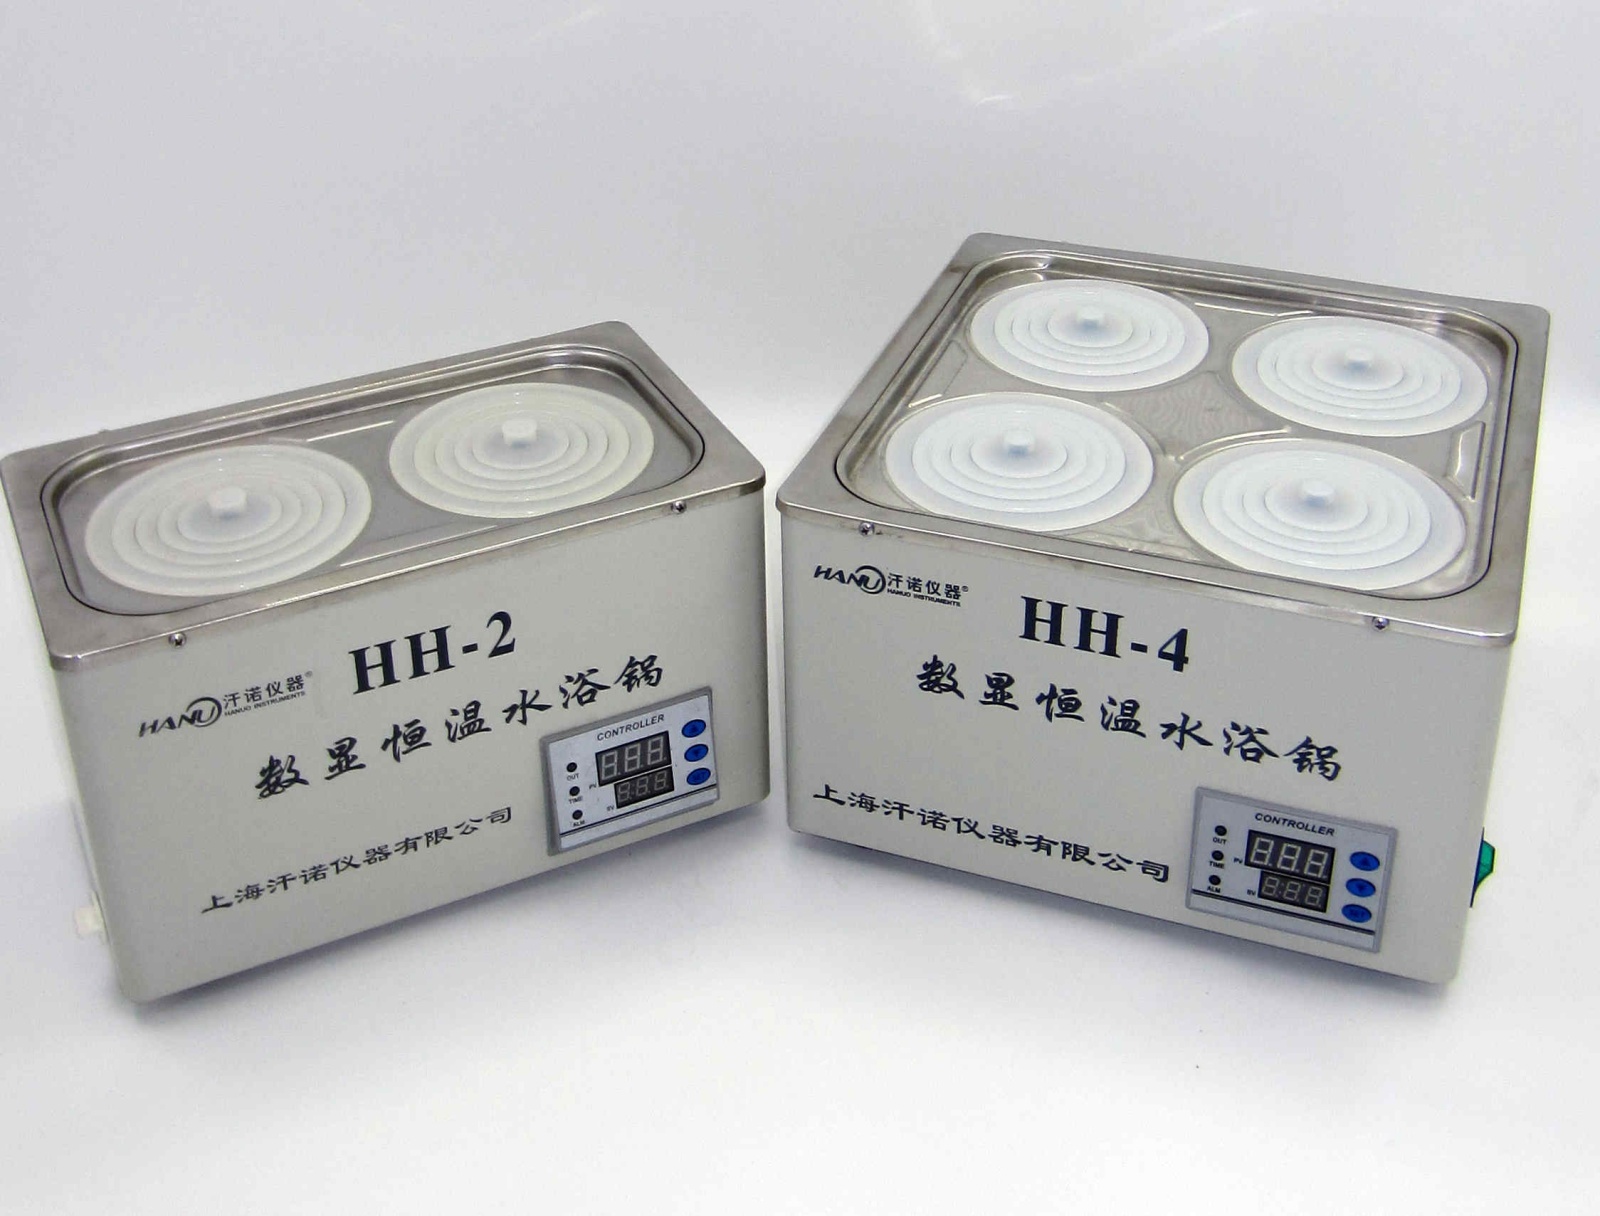 汗诺HH-2数显恒温水浴锅的图片